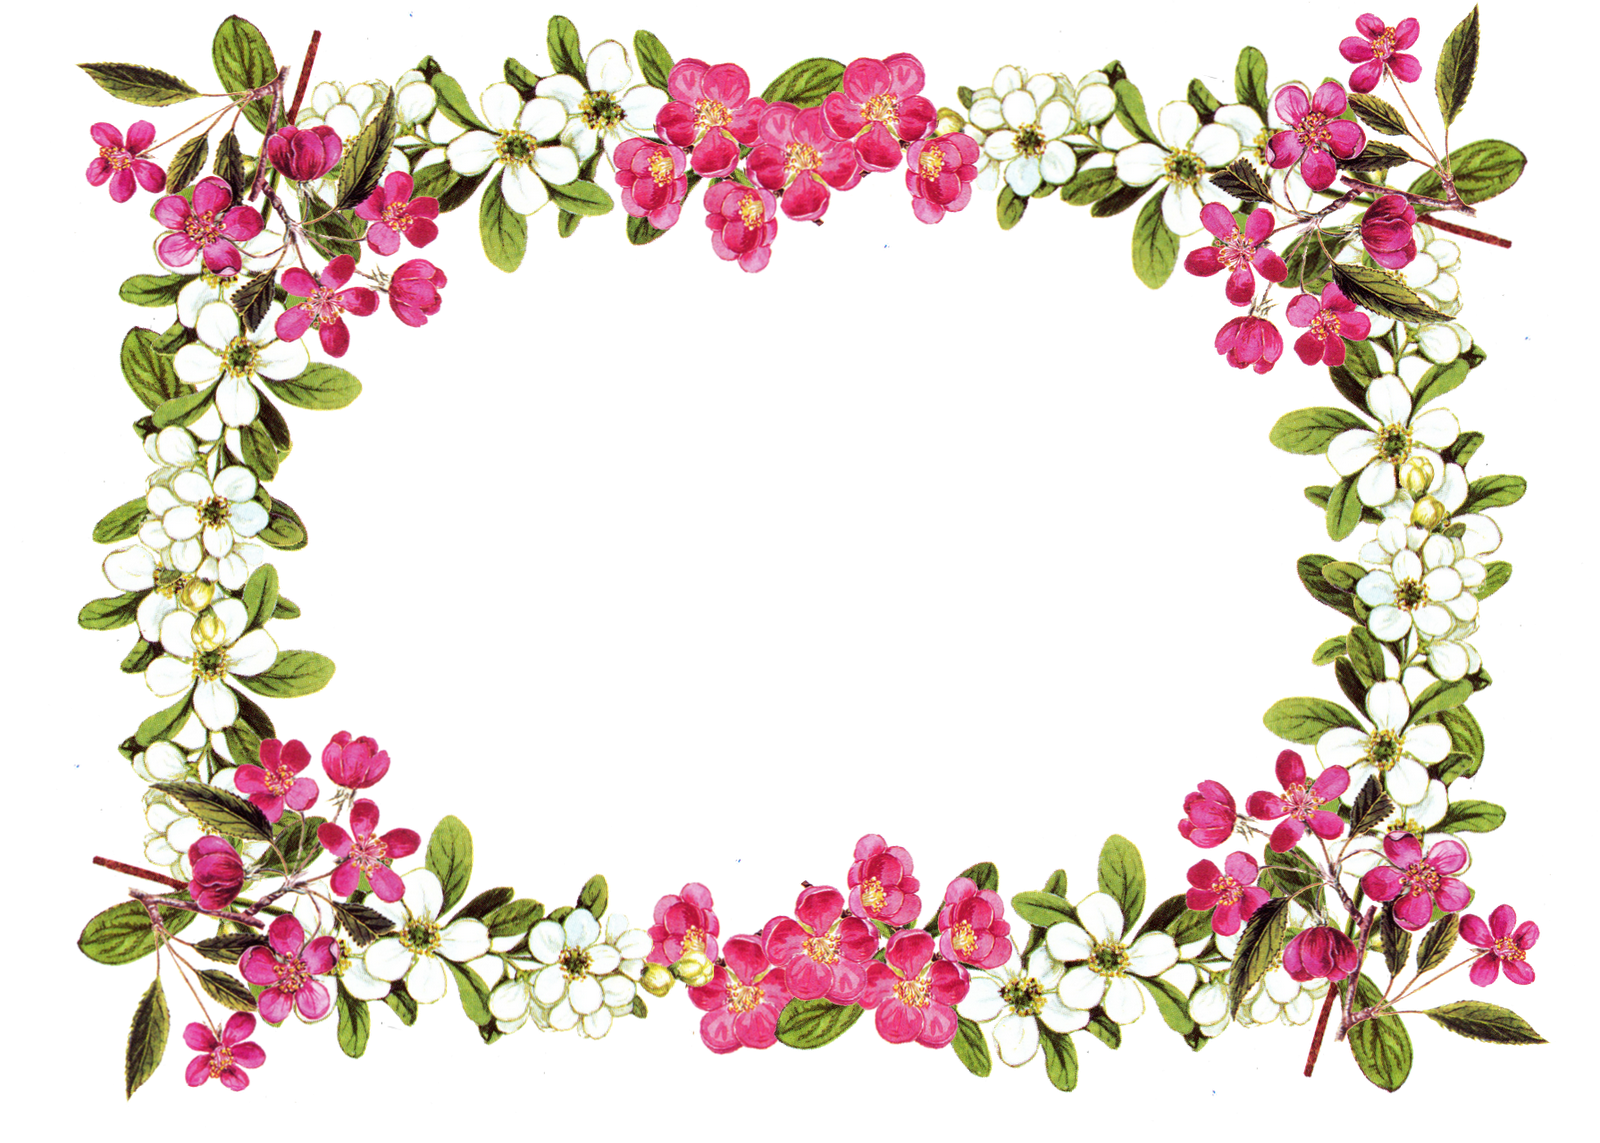 Floral Frame Image PNG Image